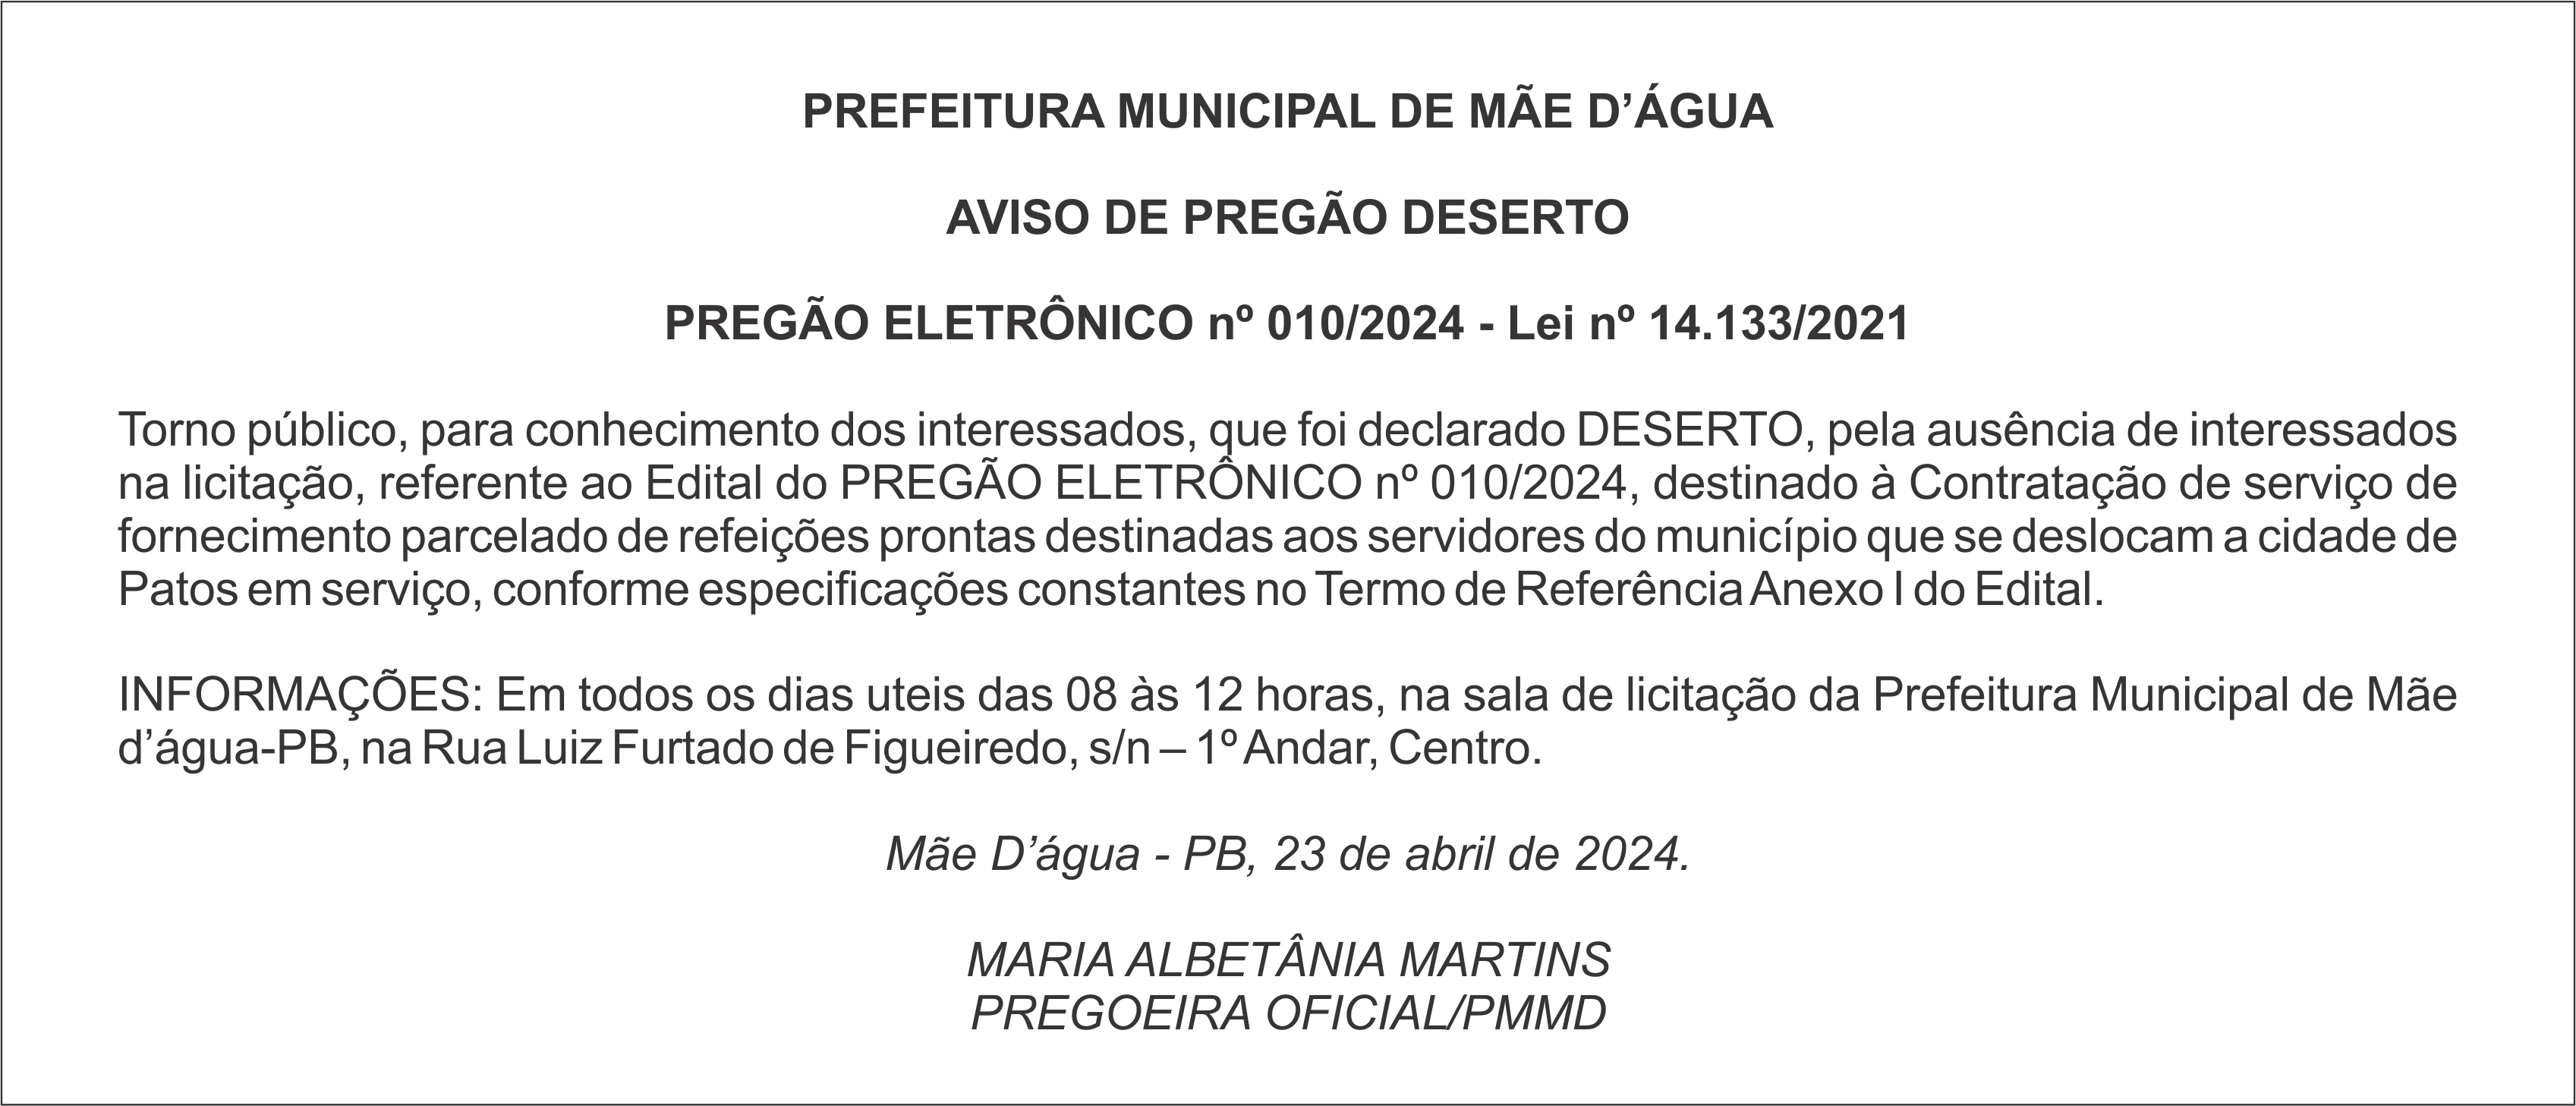 PREFEITURA MUNICIPAL DE MÃE D’ÁGUA – AVISO DE PREGÃO DESERTO – PREGÃO ELETRÔNICO nº 010/2024